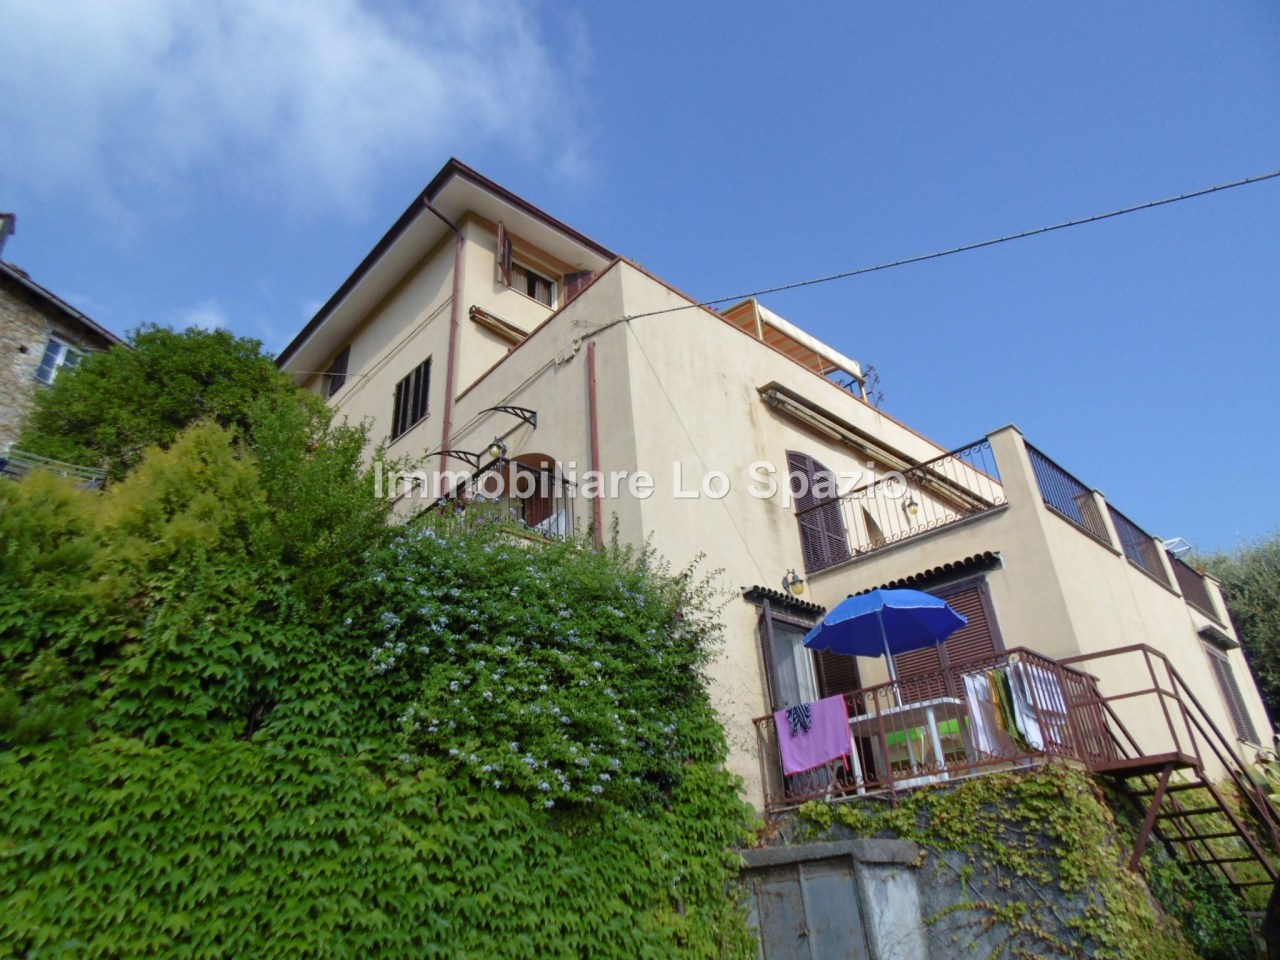 Appartamento in vendita a Andora, 2 locali, prezzo € 100.000 | PortaleAgenzieImmobiliari.it